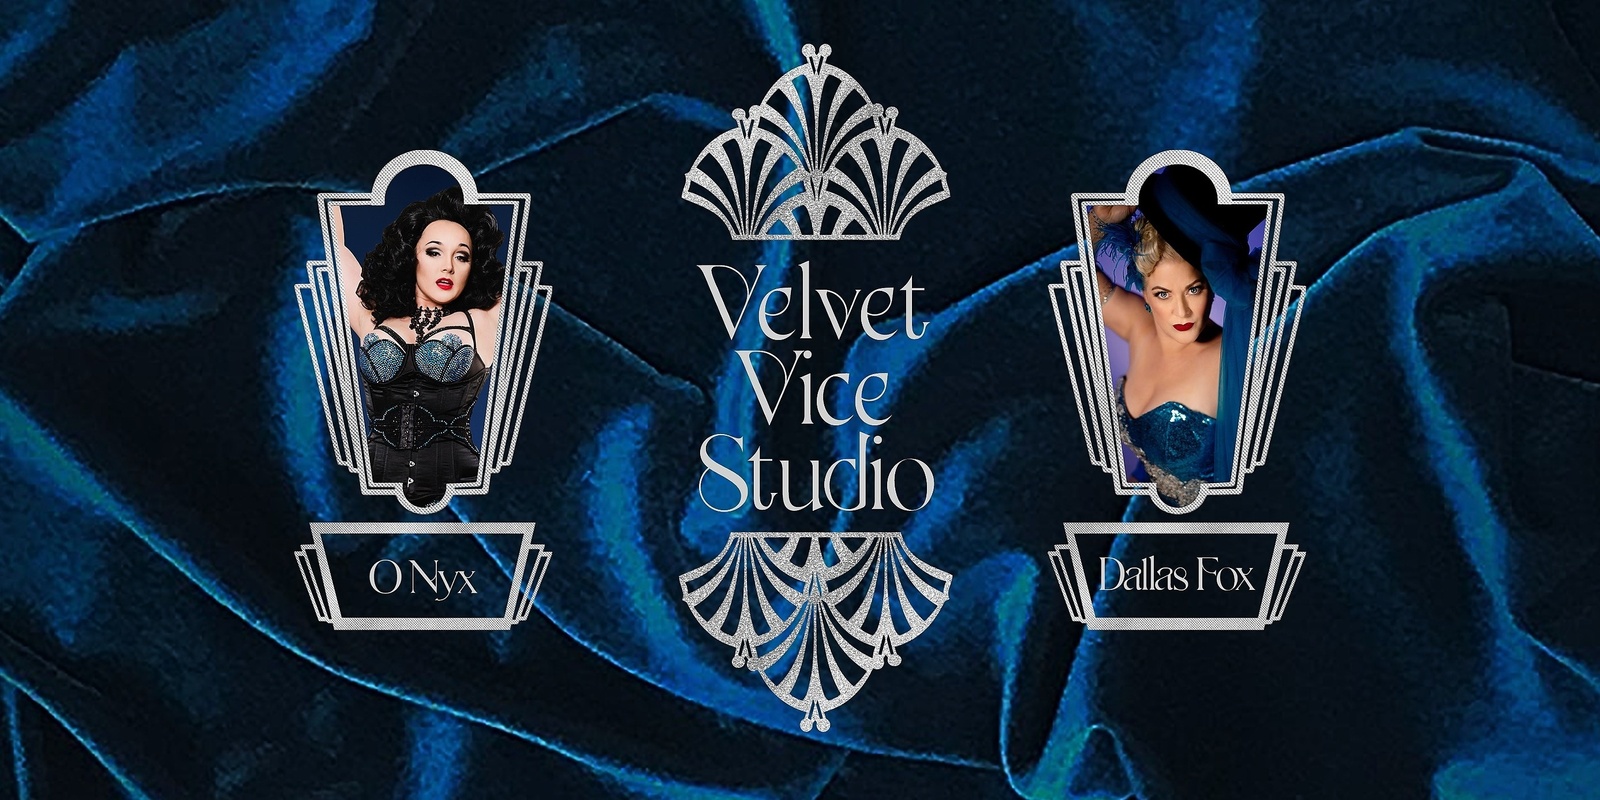 Velvet Vice Studio's banner